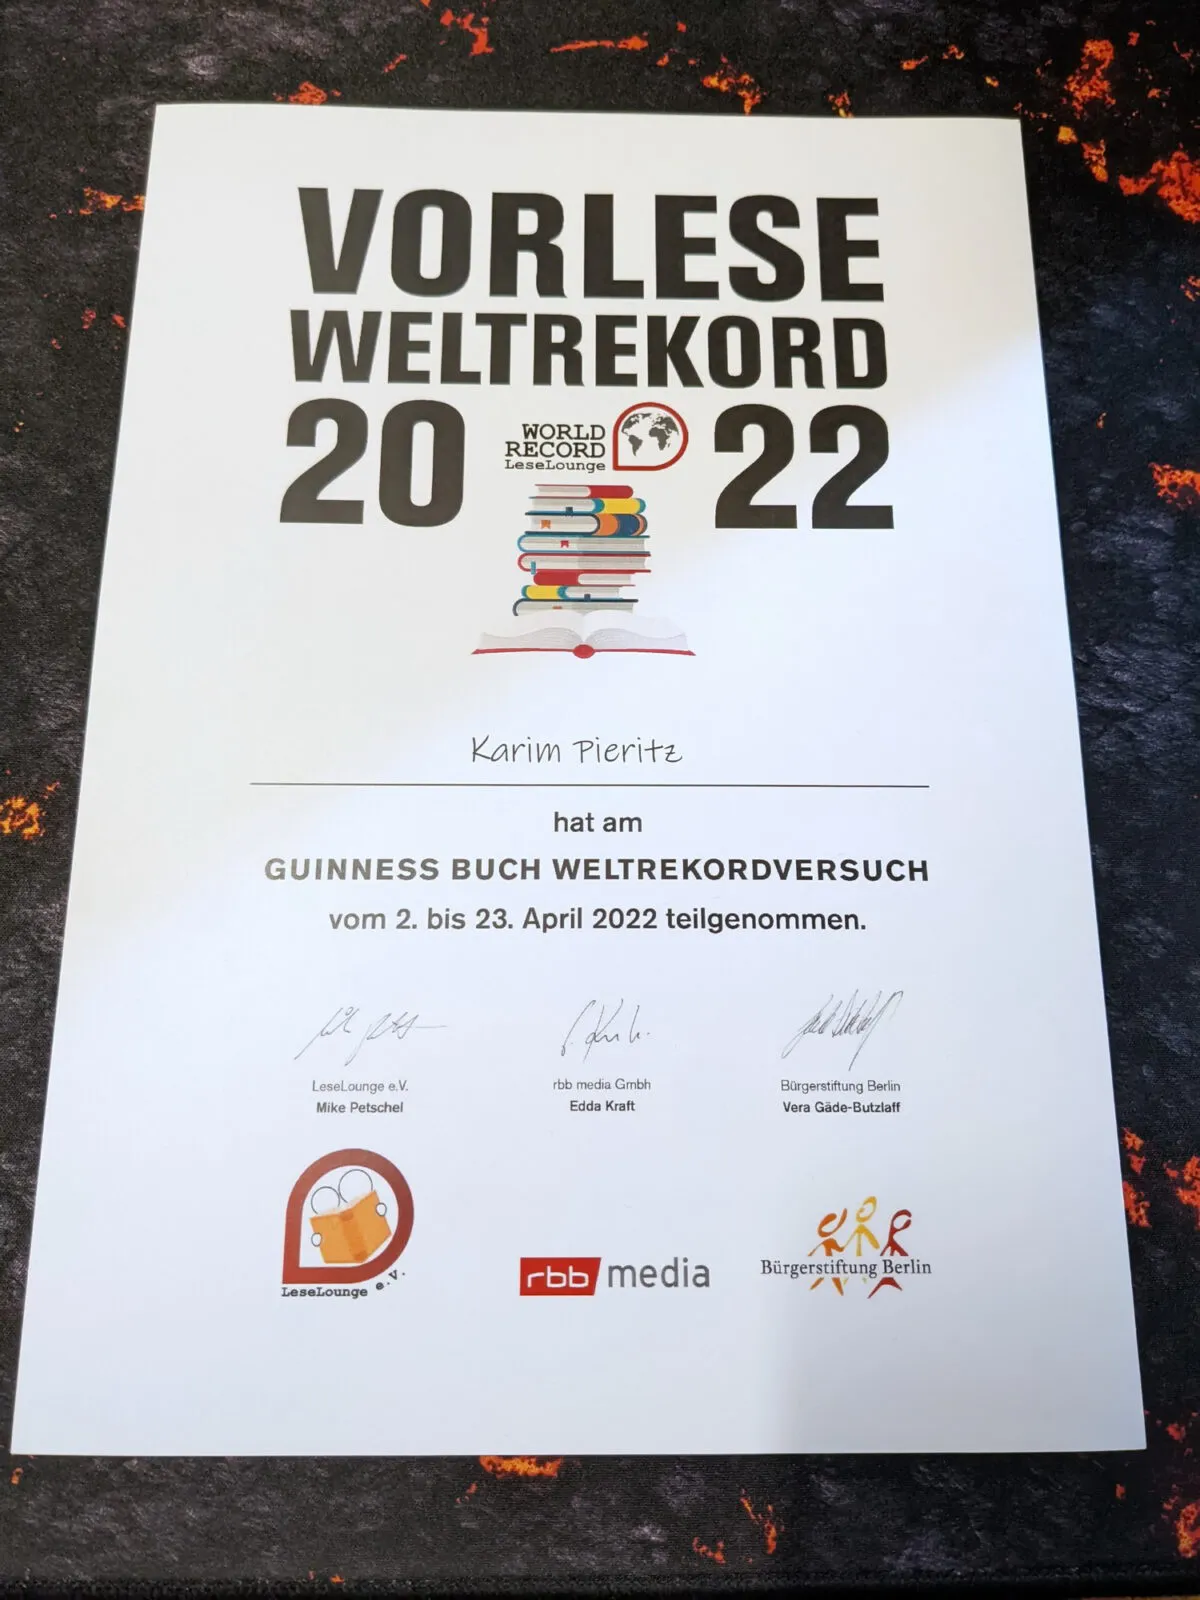 Vorlese-Weltrekord: Berlin will 2022 den Weltrekord im Vorlesen holen